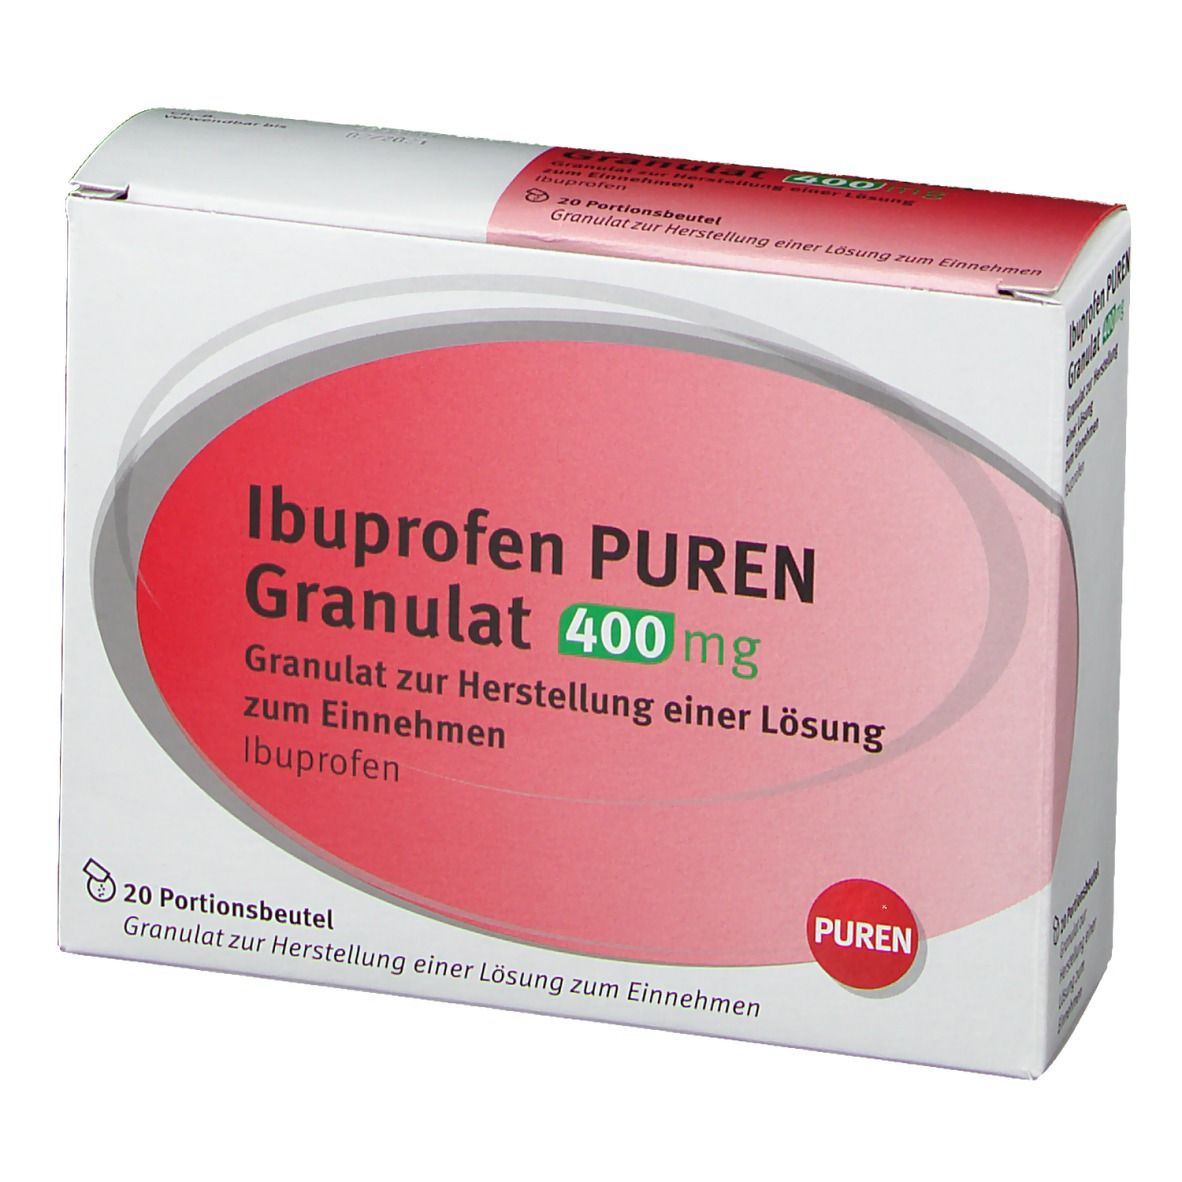 Ибупрофен 400 купить. Ibuprofen 600 MG Испания. Ibuprofen 400 в Испании. Ибупрофен Индия 400 мг. Ibuprofen 600mg Zararlari.